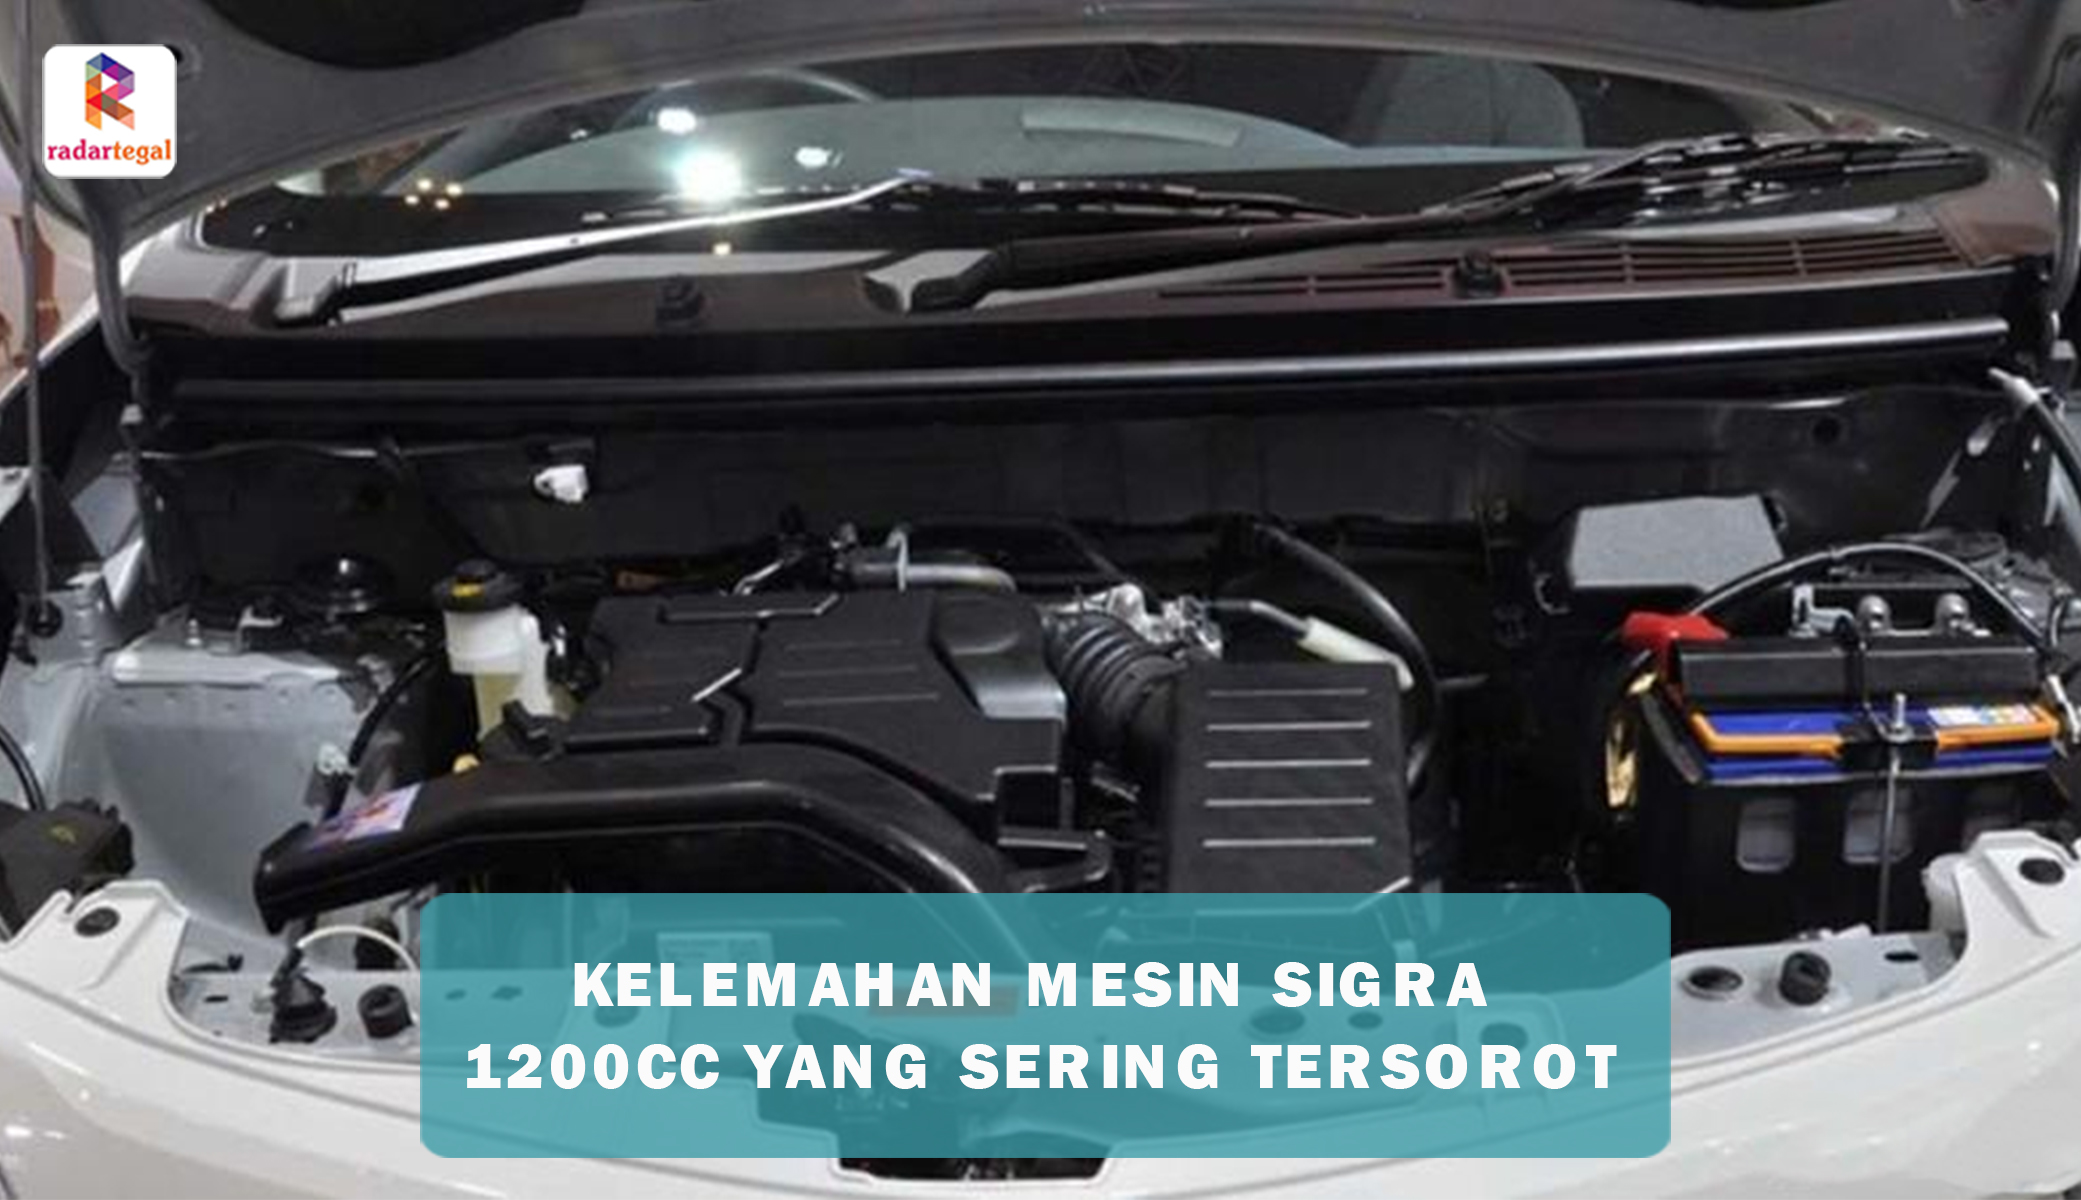 4 Kelemahan Mesin Sigra 1200 cc yang Sering Menjadi Sorotan, Utamanya Soal Akselerasi yang Kurang Memuaskan